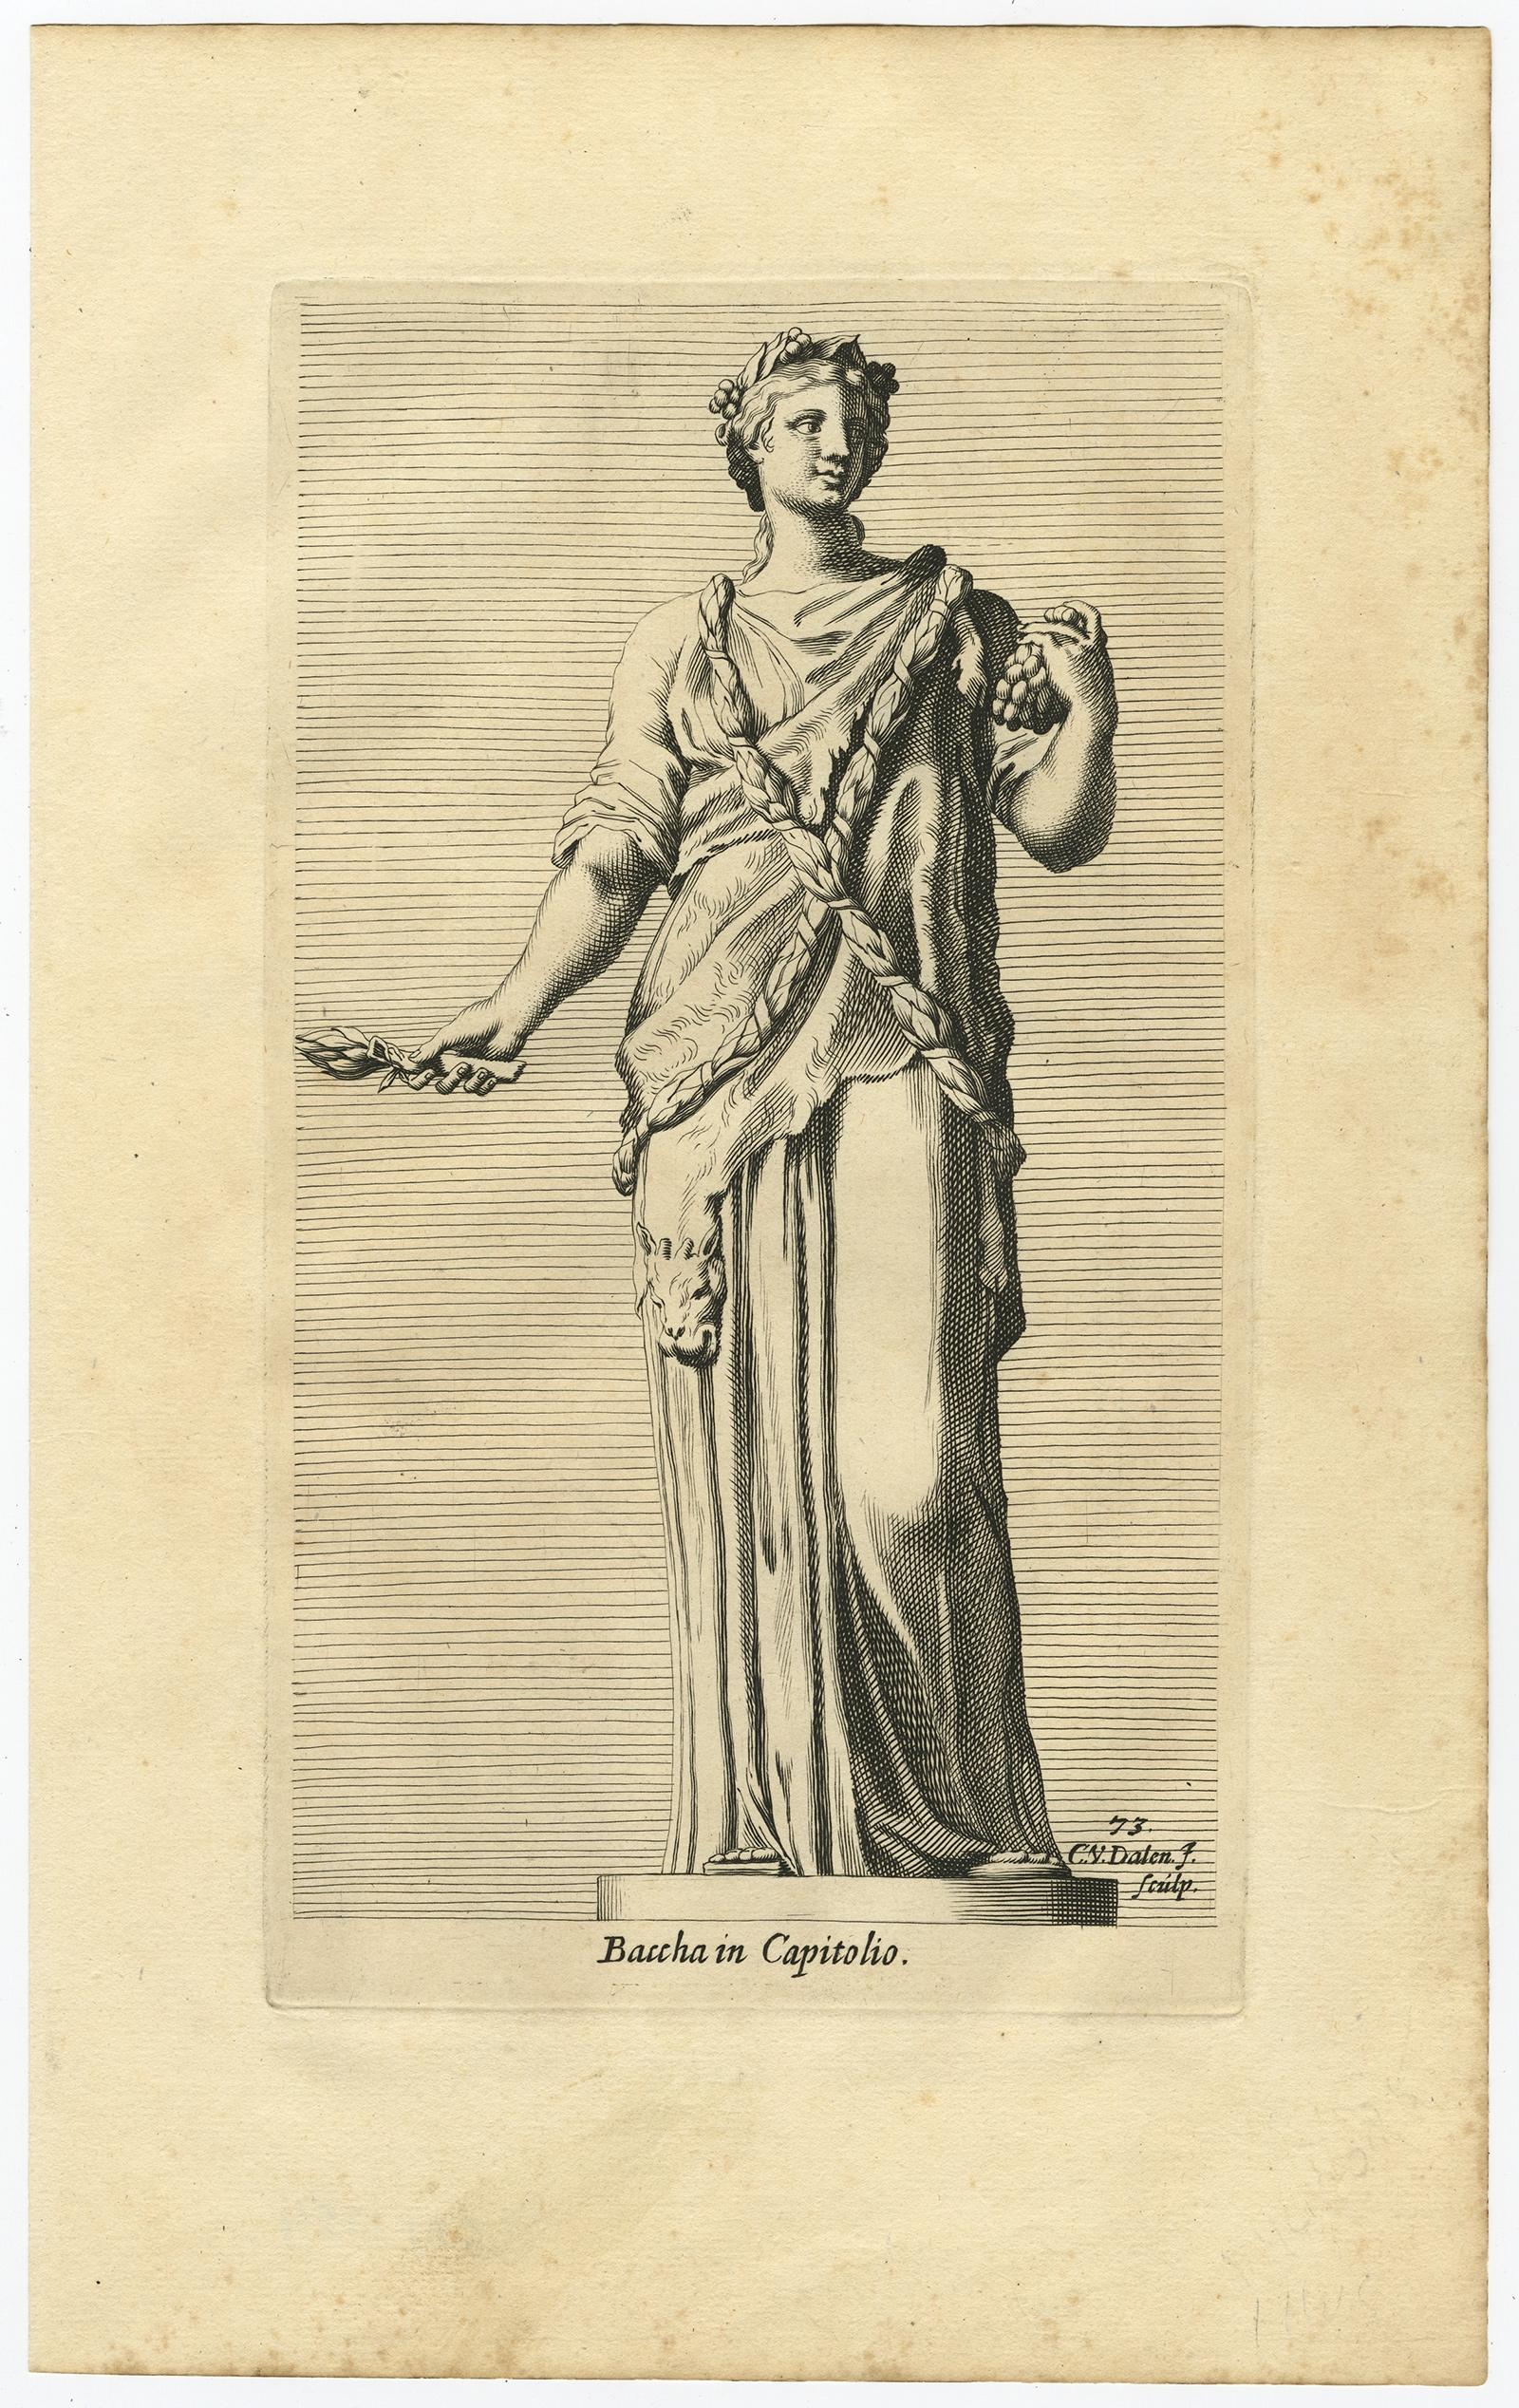 Description : gravure ancienne, titrée : 'Baccha in Capitolio' 

Statue de Bacchus ou Dionysos, le dieu des vendanges, de la vinification et du vin, de la folie rituelle, de la fertilité, du théâtre et de l'extase religieuse dans la religion et le